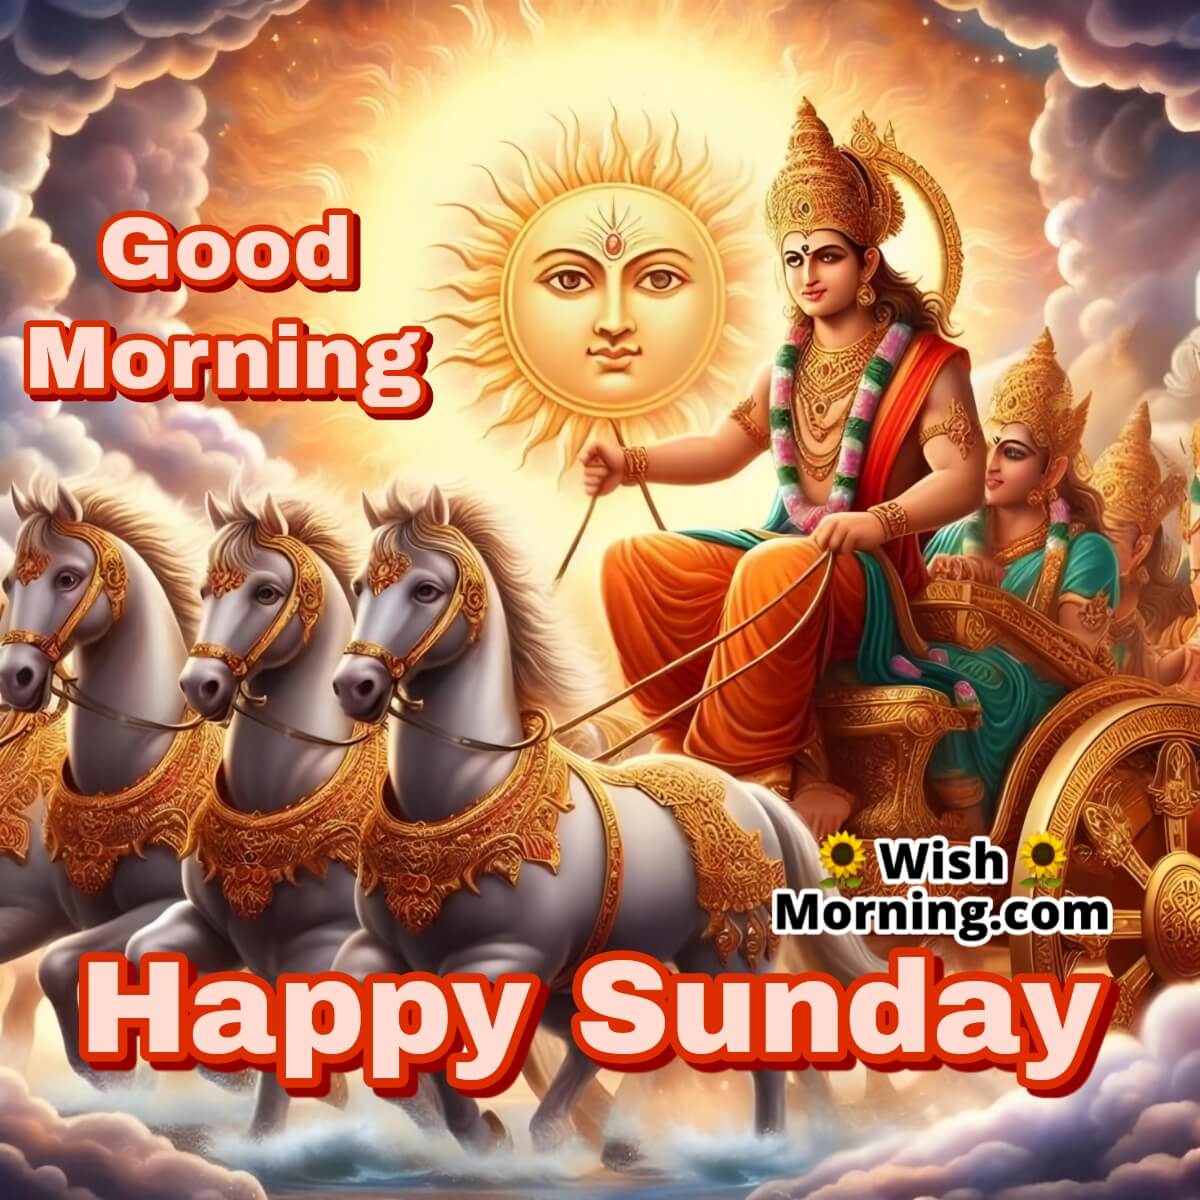 Good Morning Happy Sunday Suryadev Image